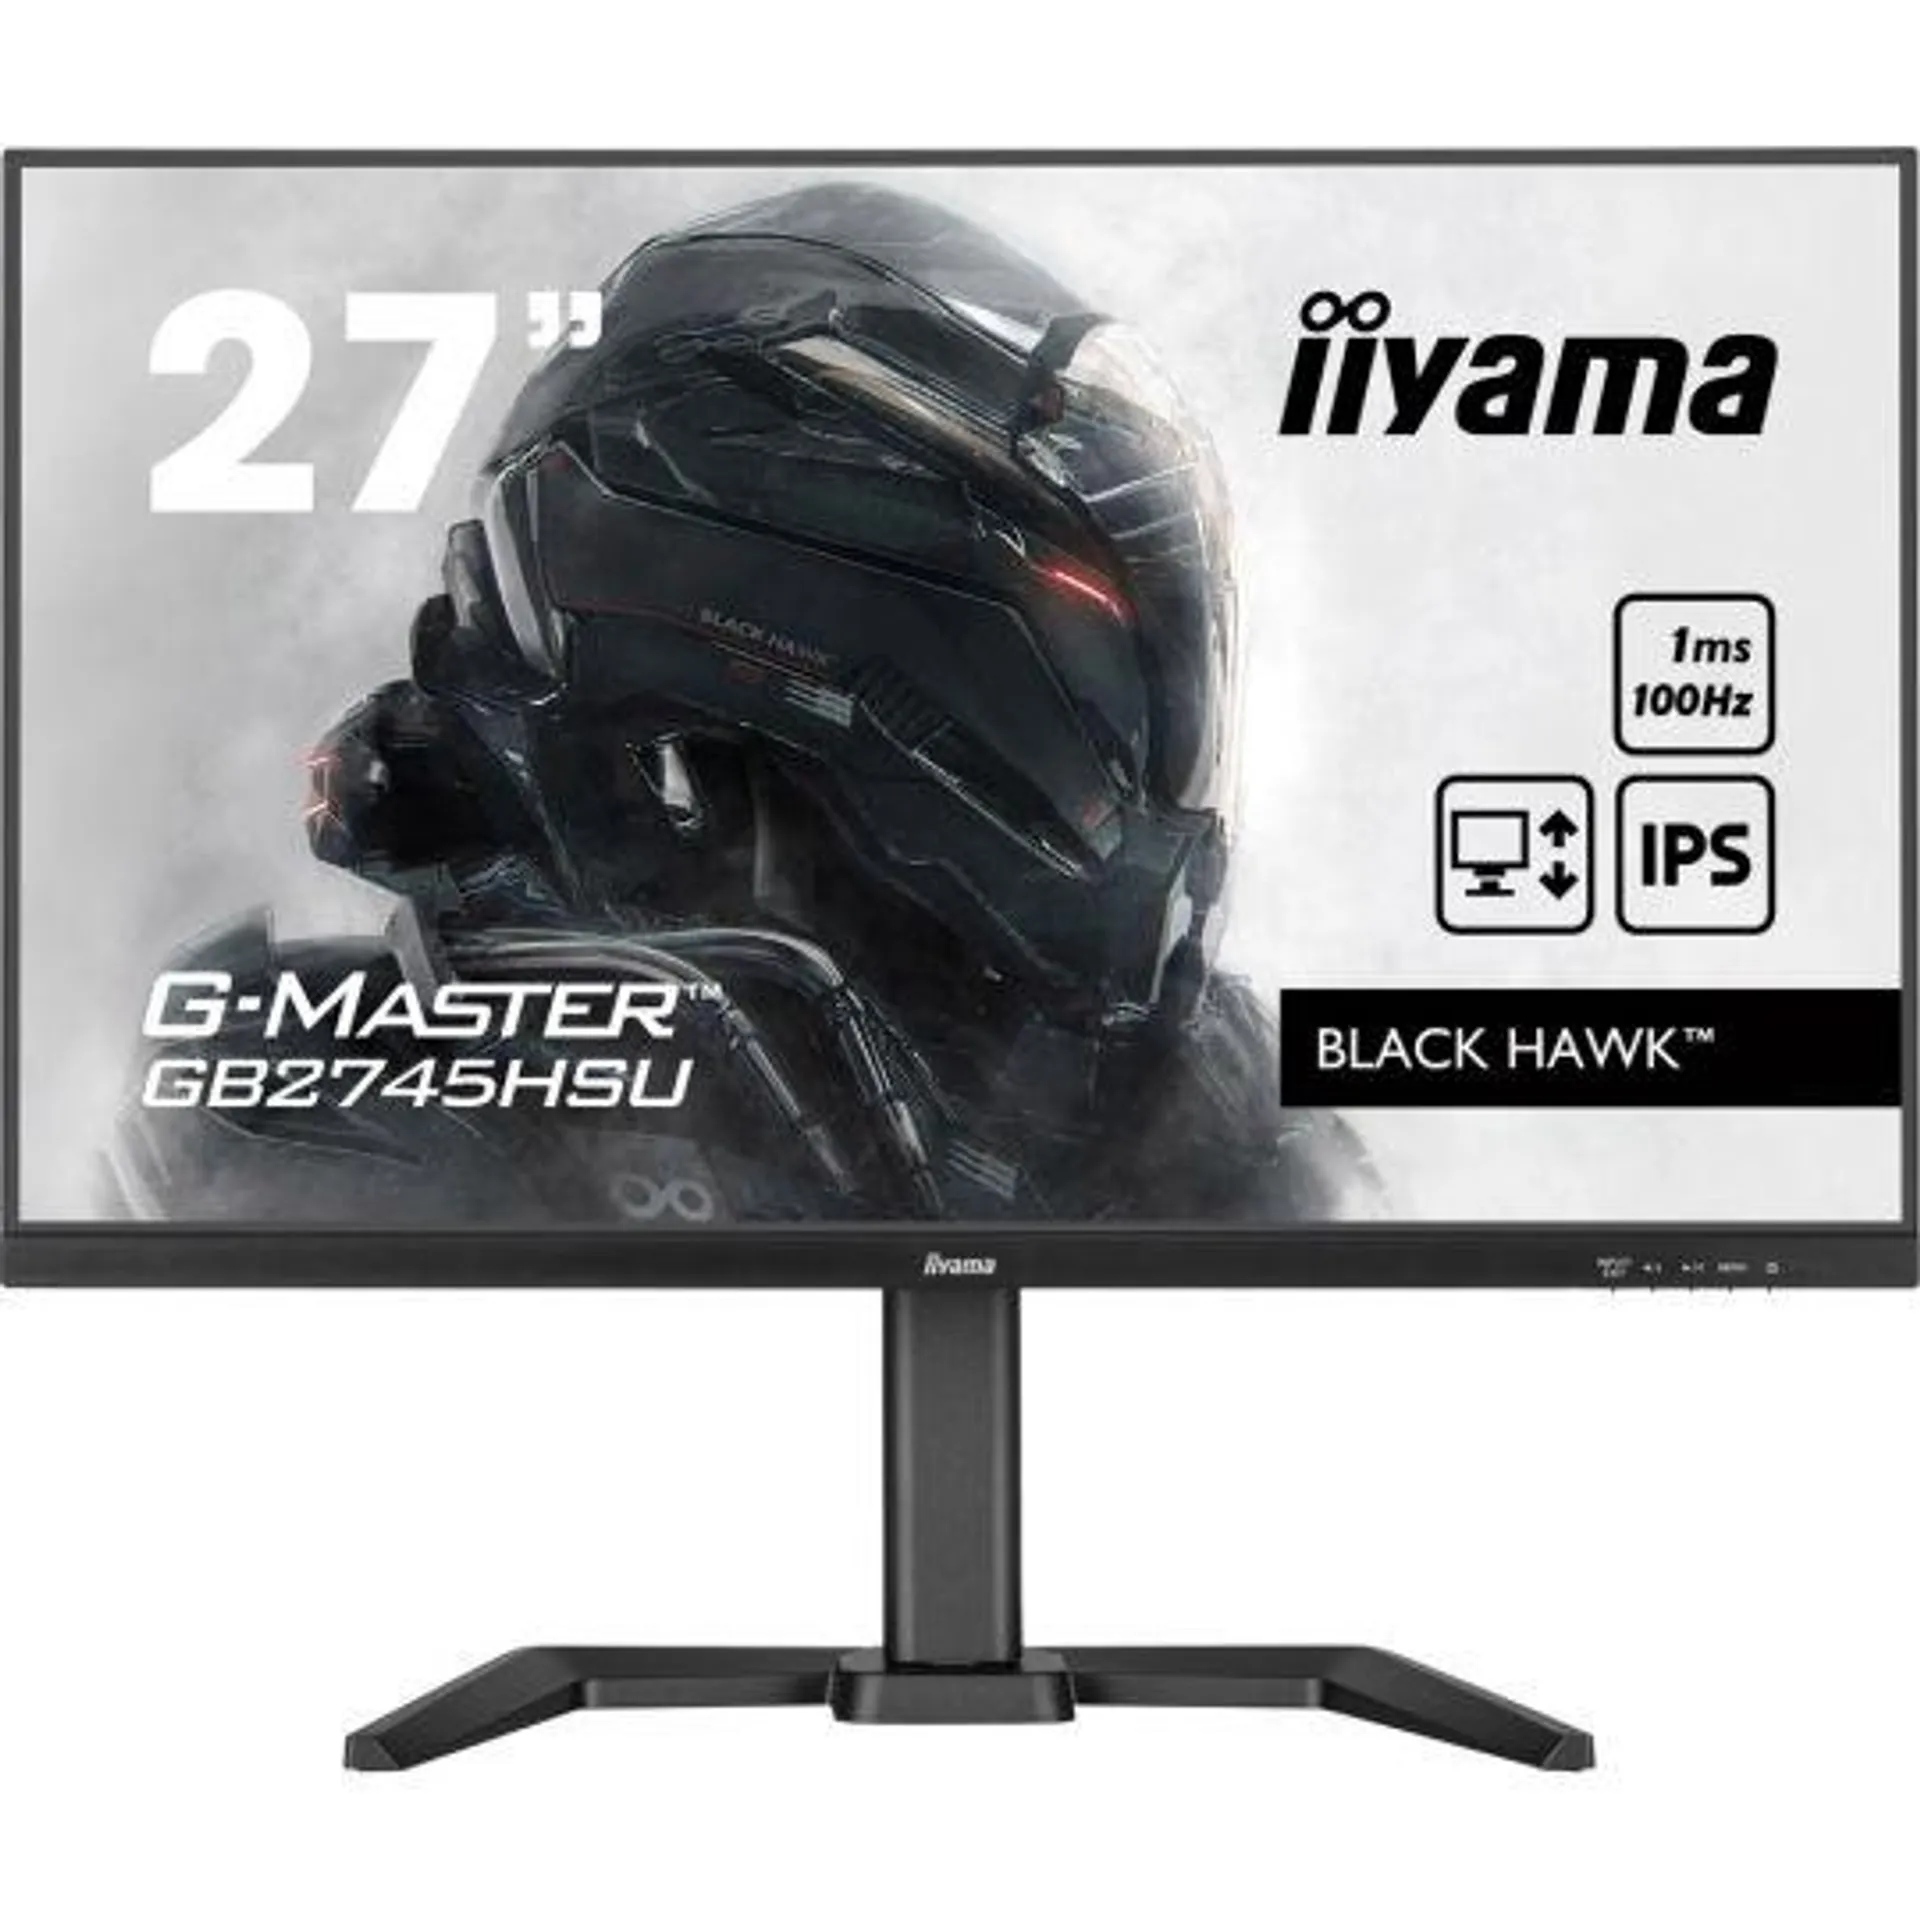 iiyama G-Master GB2745HSU-B1 Black Hawk - 27'' FullHD 100Hz Gaming Monitor